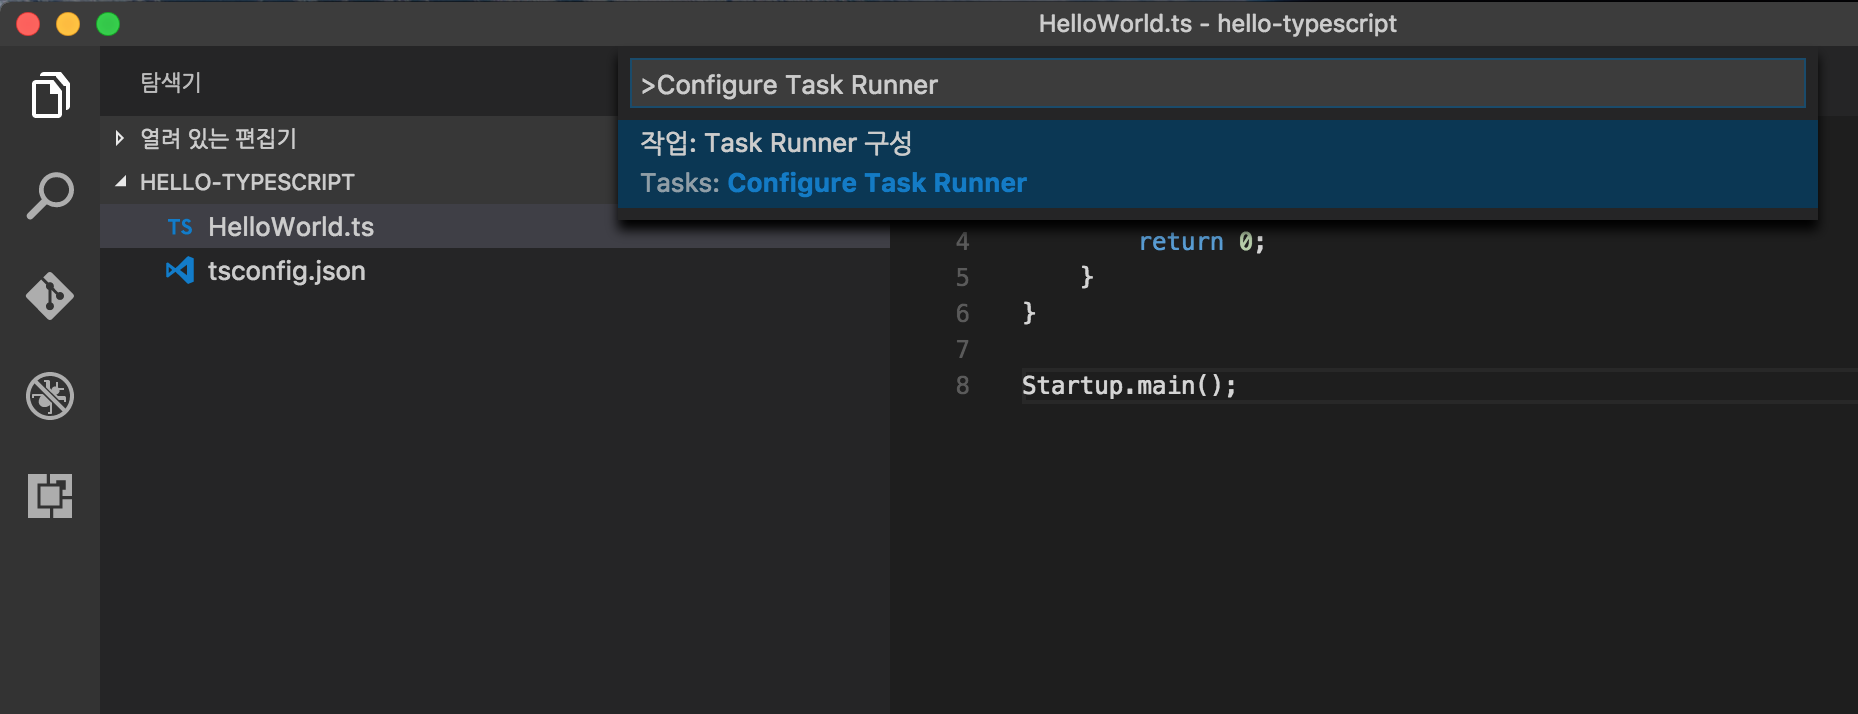 Configure-Task-Runner